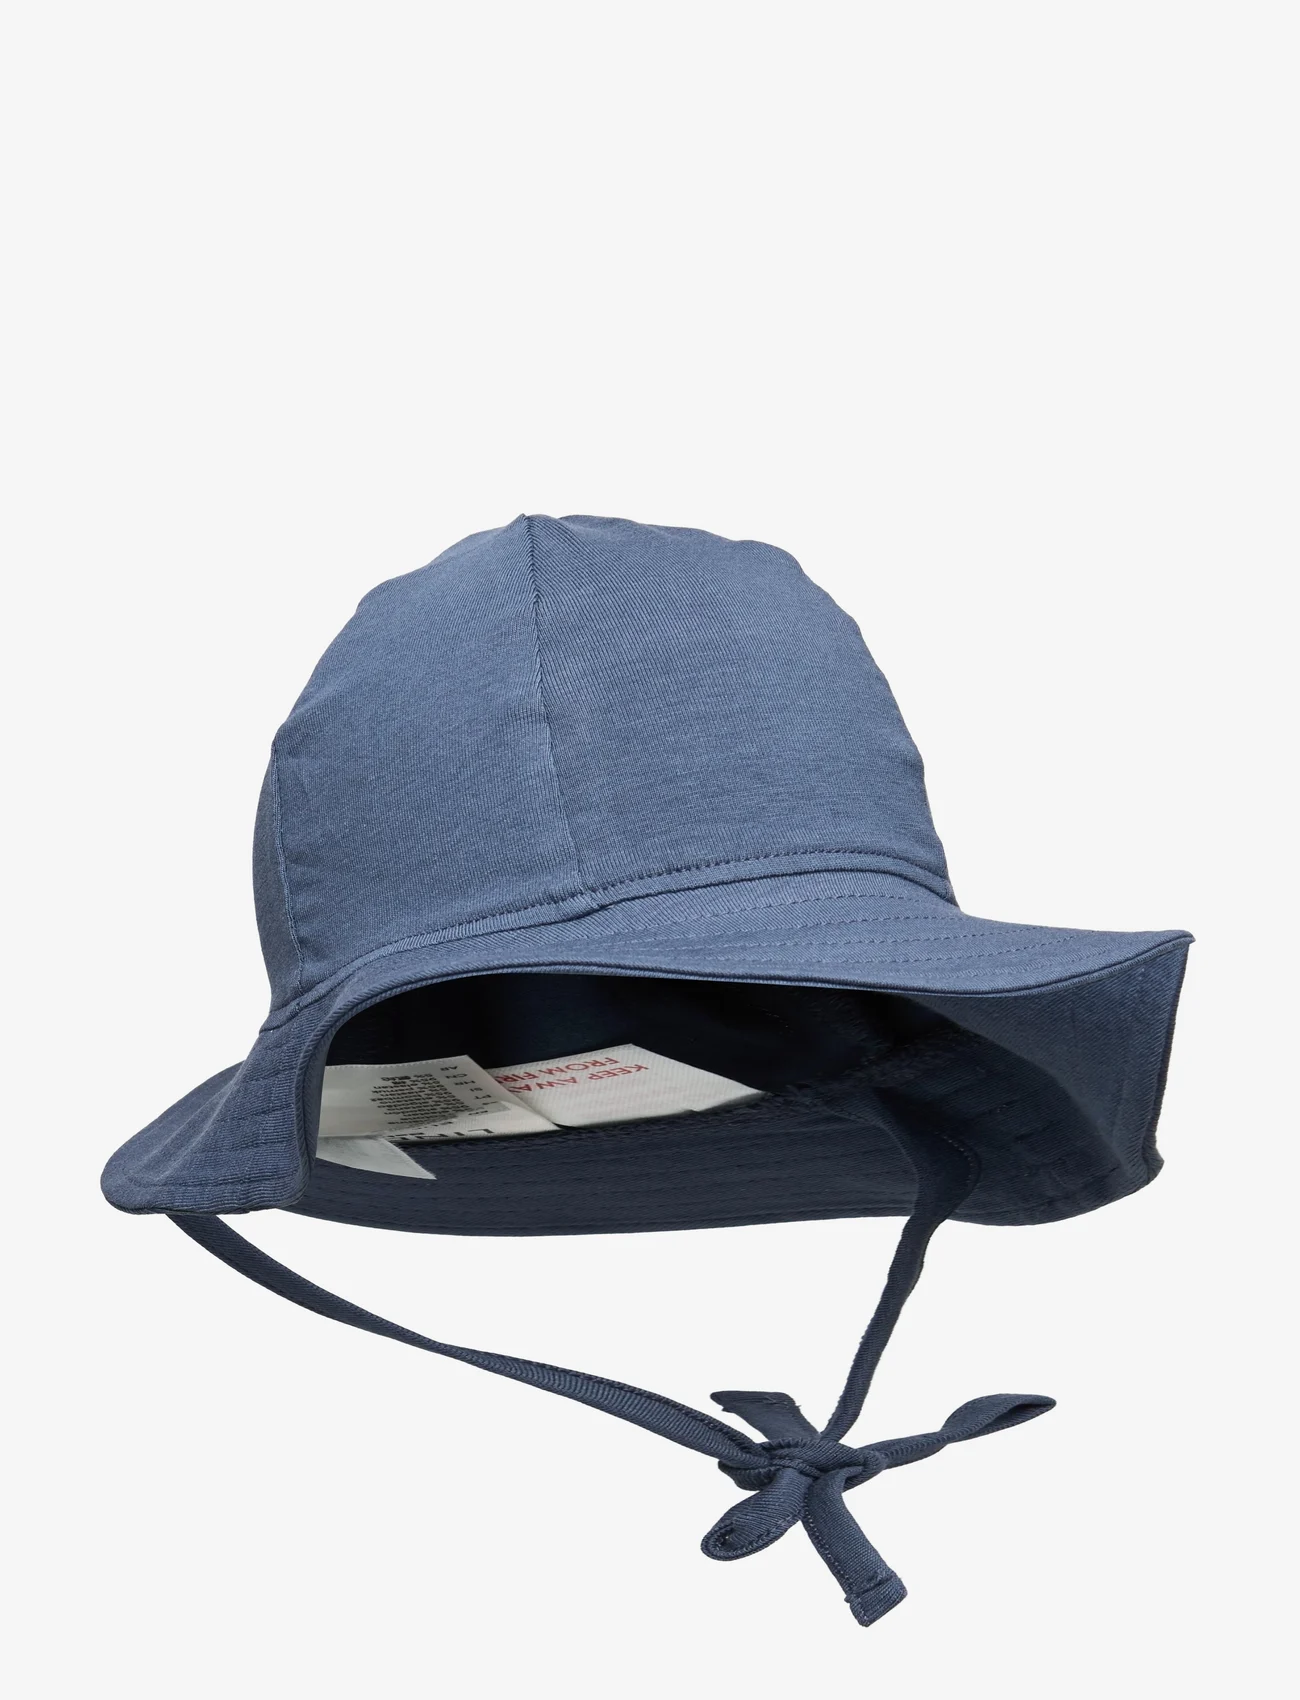 Lindex - Sun Hat jersey - kapelusze przeciwsłoneczne - dusty blue - 0